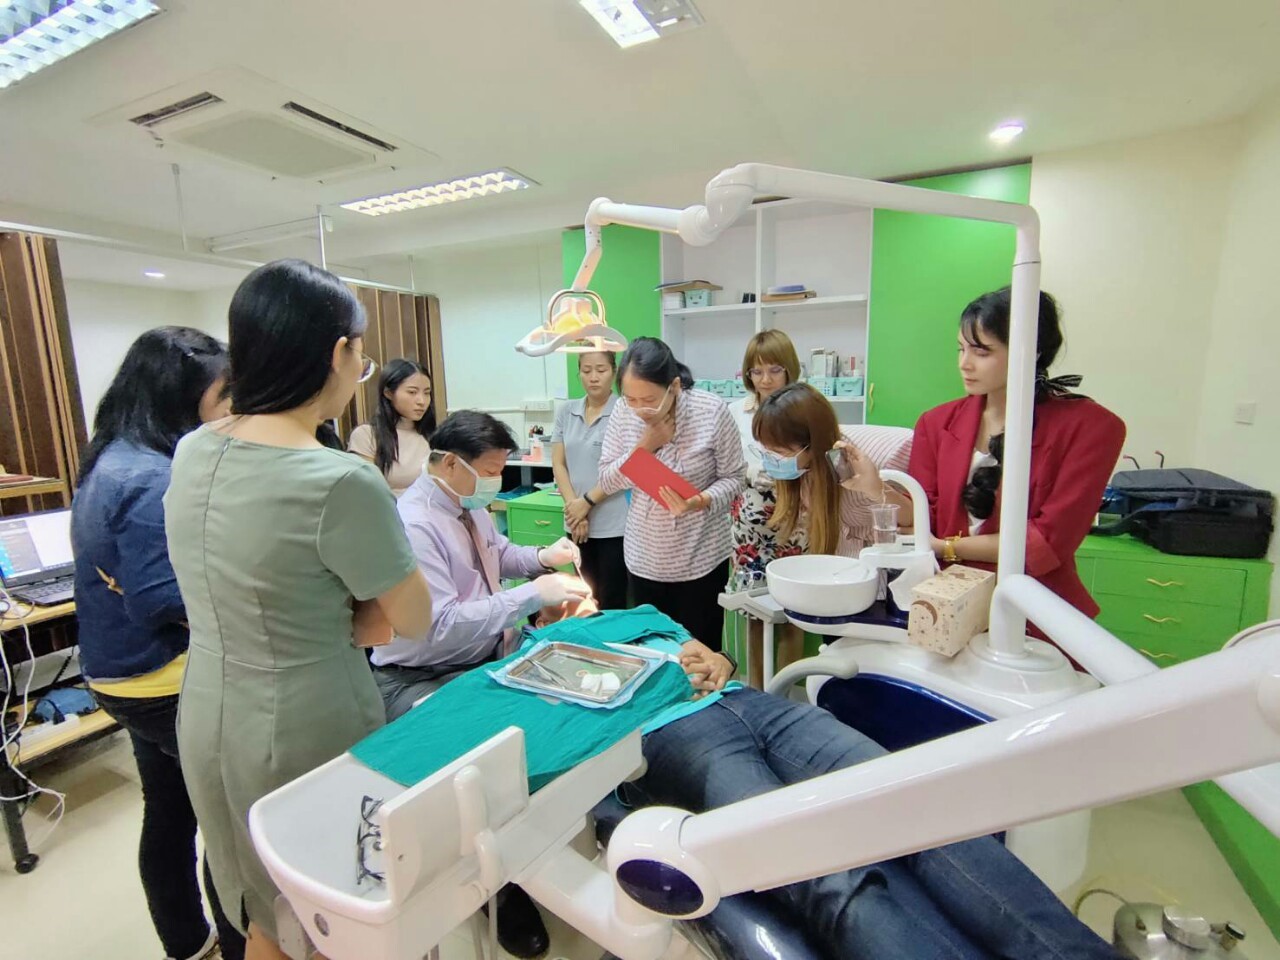 การเรียนการสอน หลักสูตรรากฟันเทียมบูรณาการรุ่นที่ 5 "Integrated Basic & Advance Implantology" ณ ห้องประชุม Prominent บริษัท พรอมมิเน้นท์ จำกัด